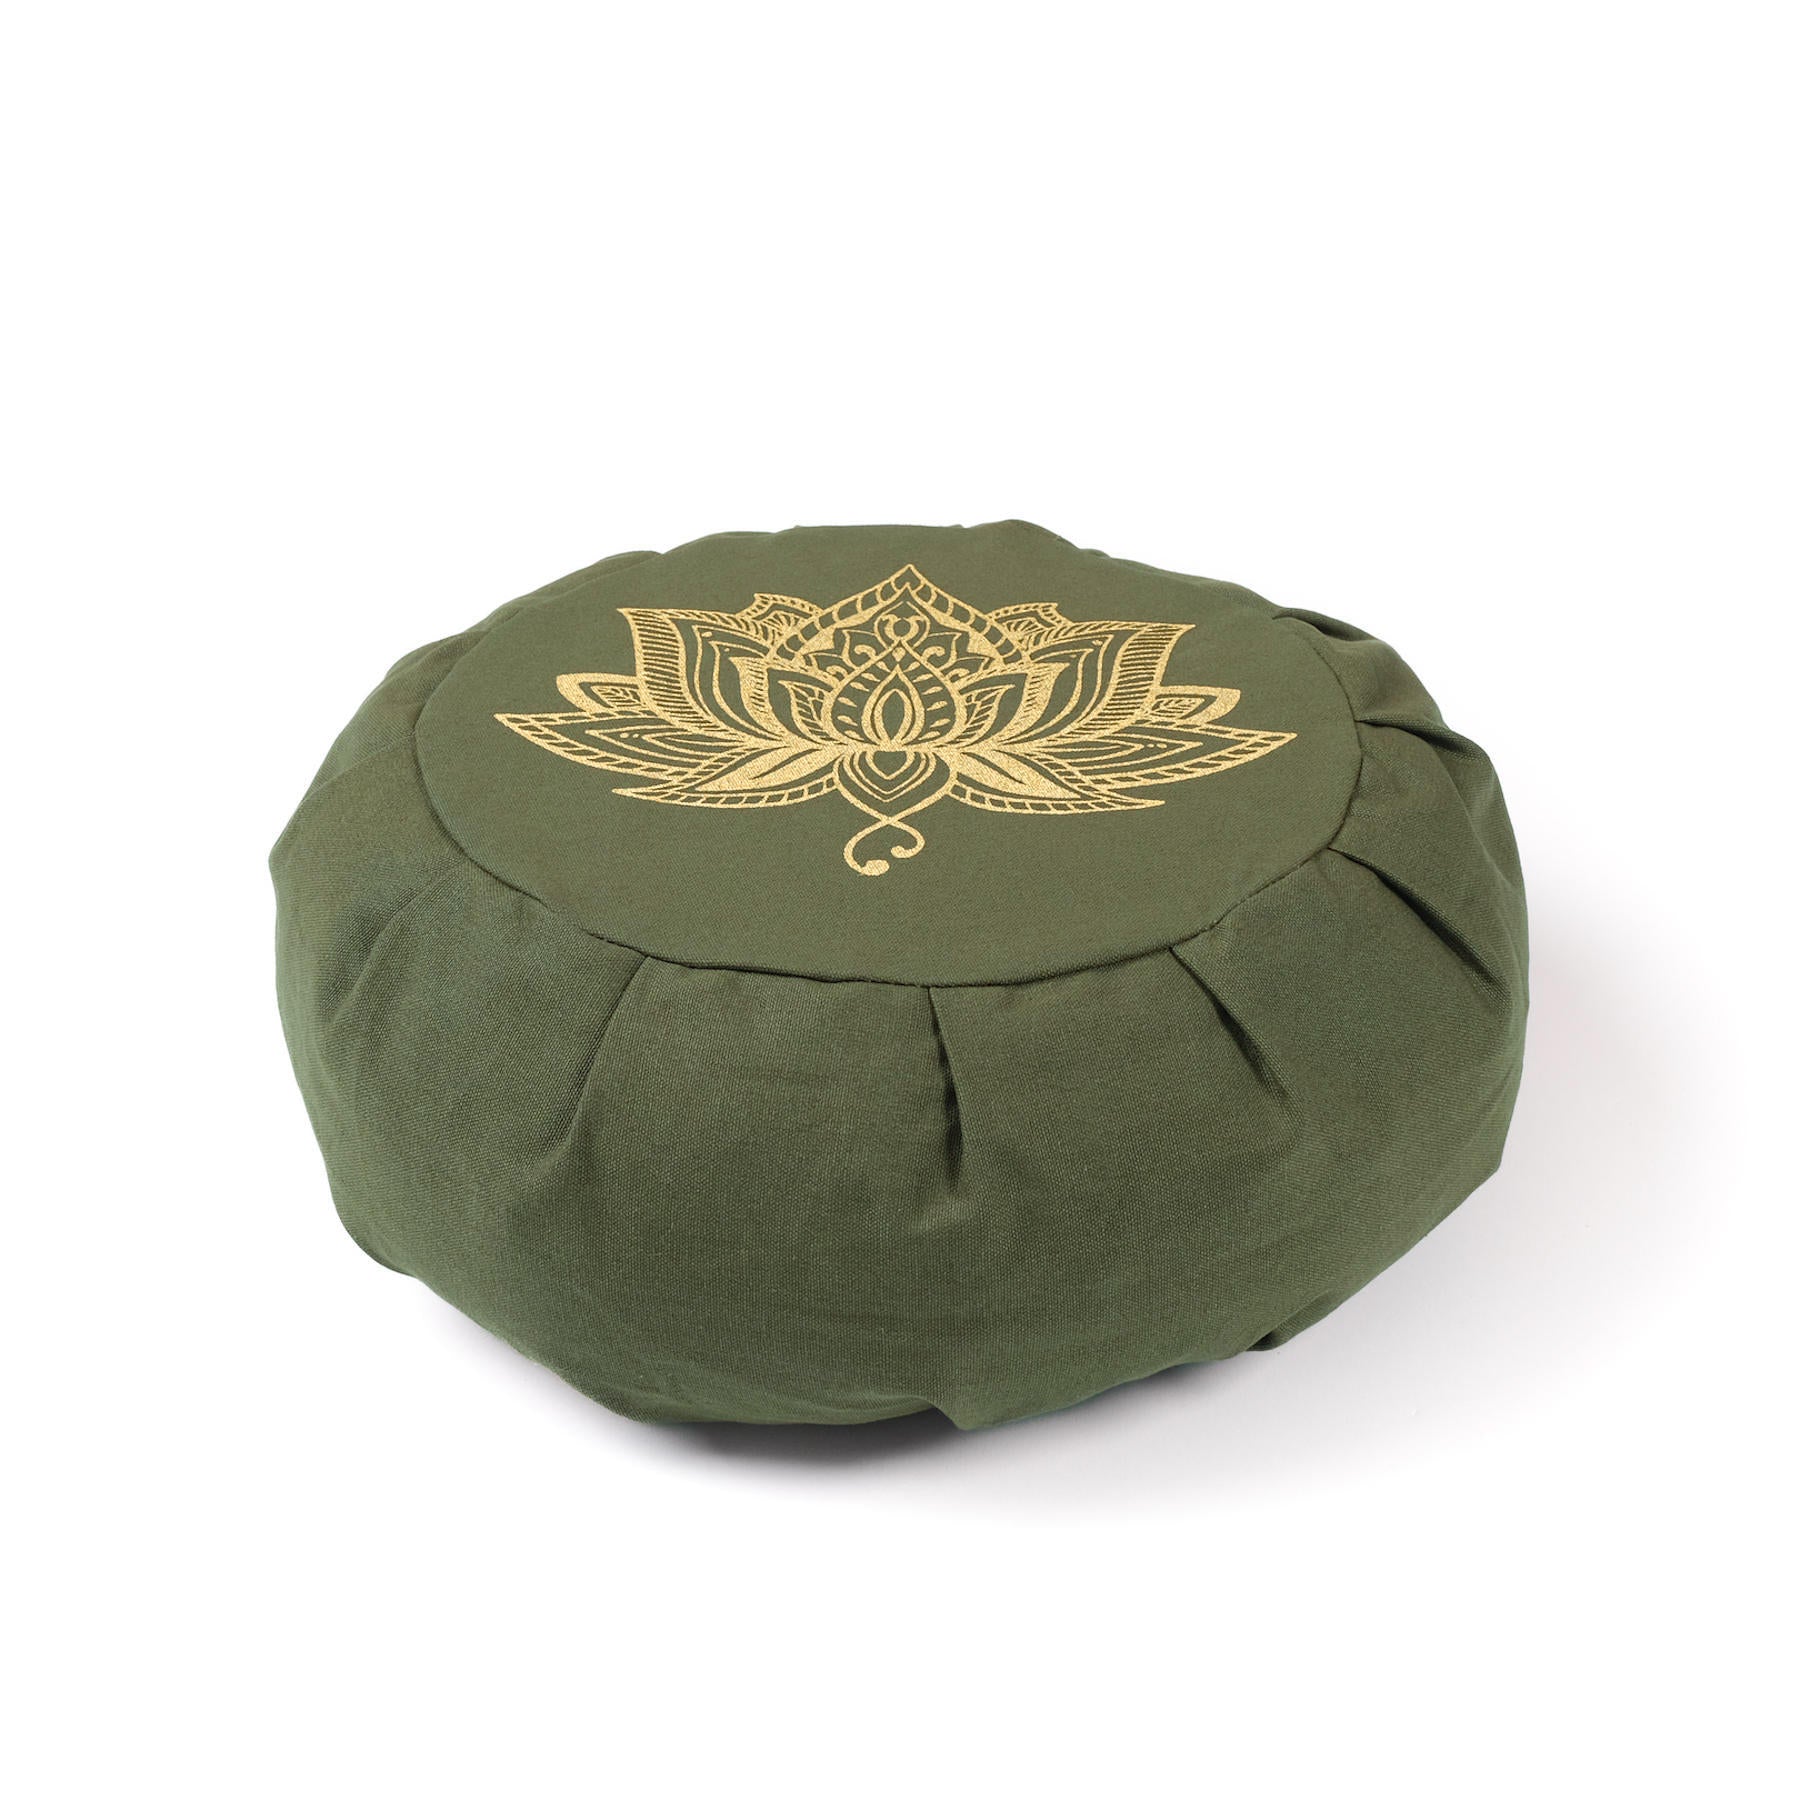 Coussin de méditation Zafu en coton bio vert olive avec imprimé or Lotus